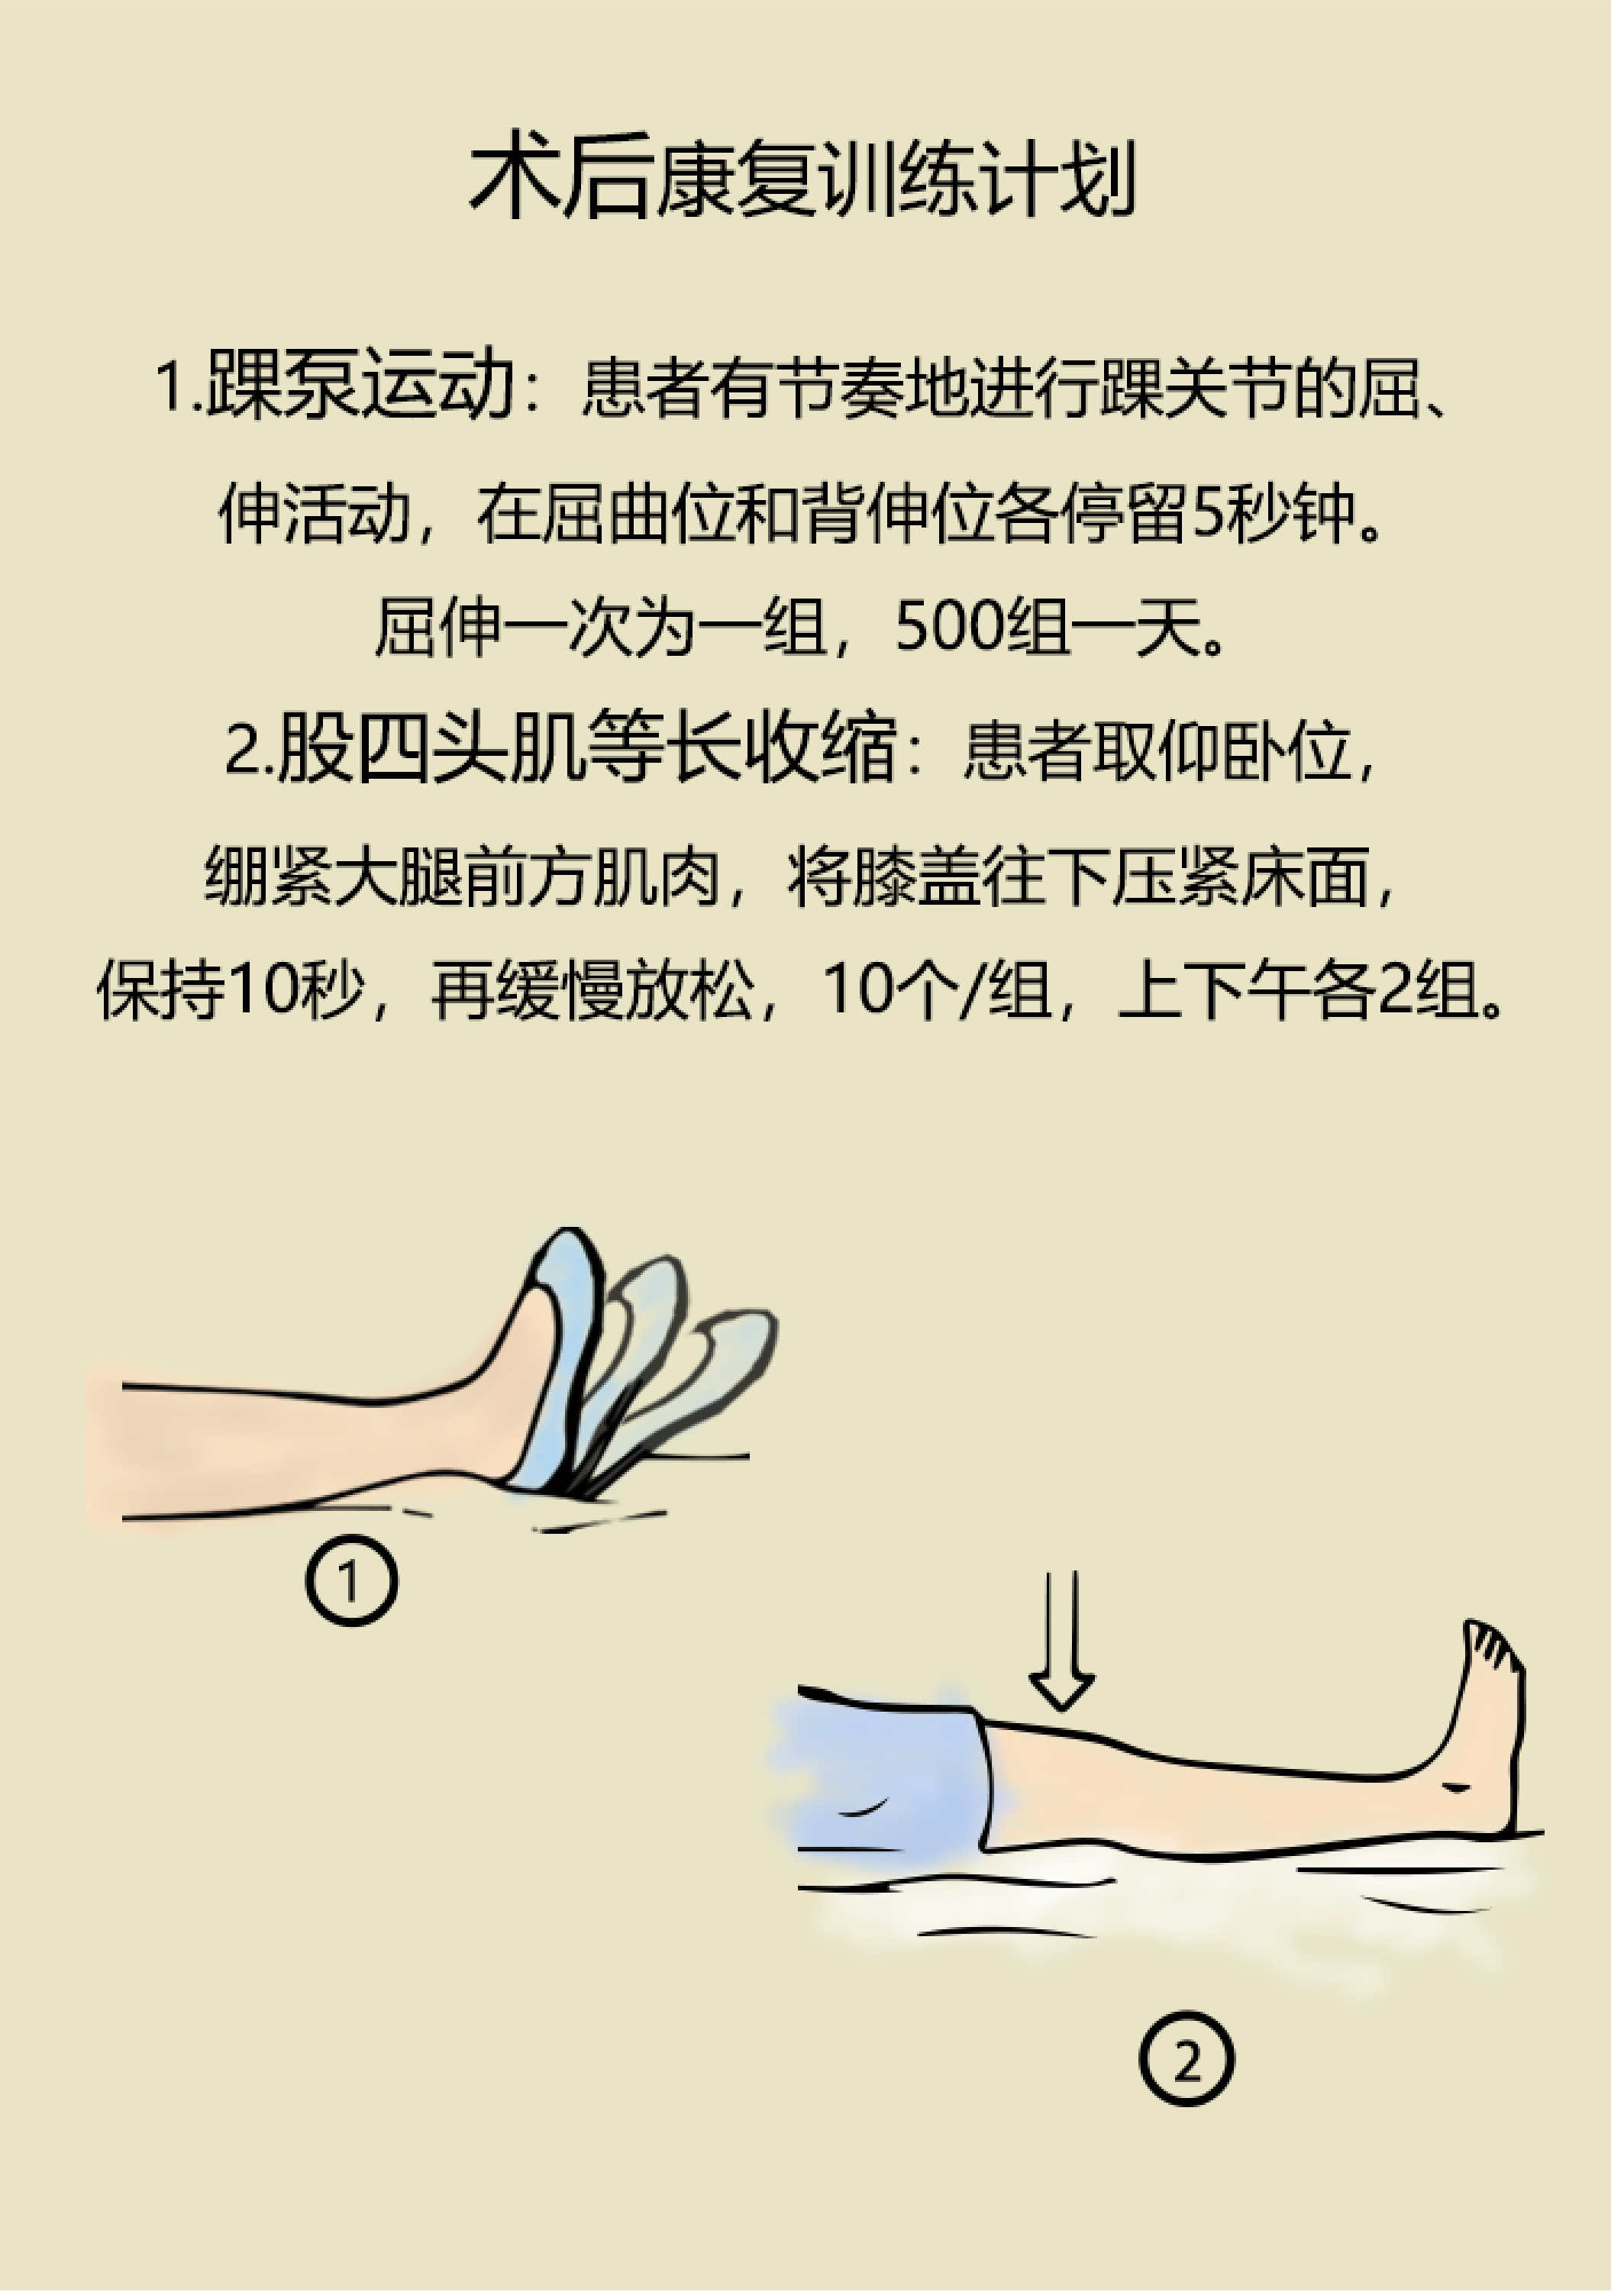 (漫画版)膝关节置换术后康复锻炼和注意事项_手术